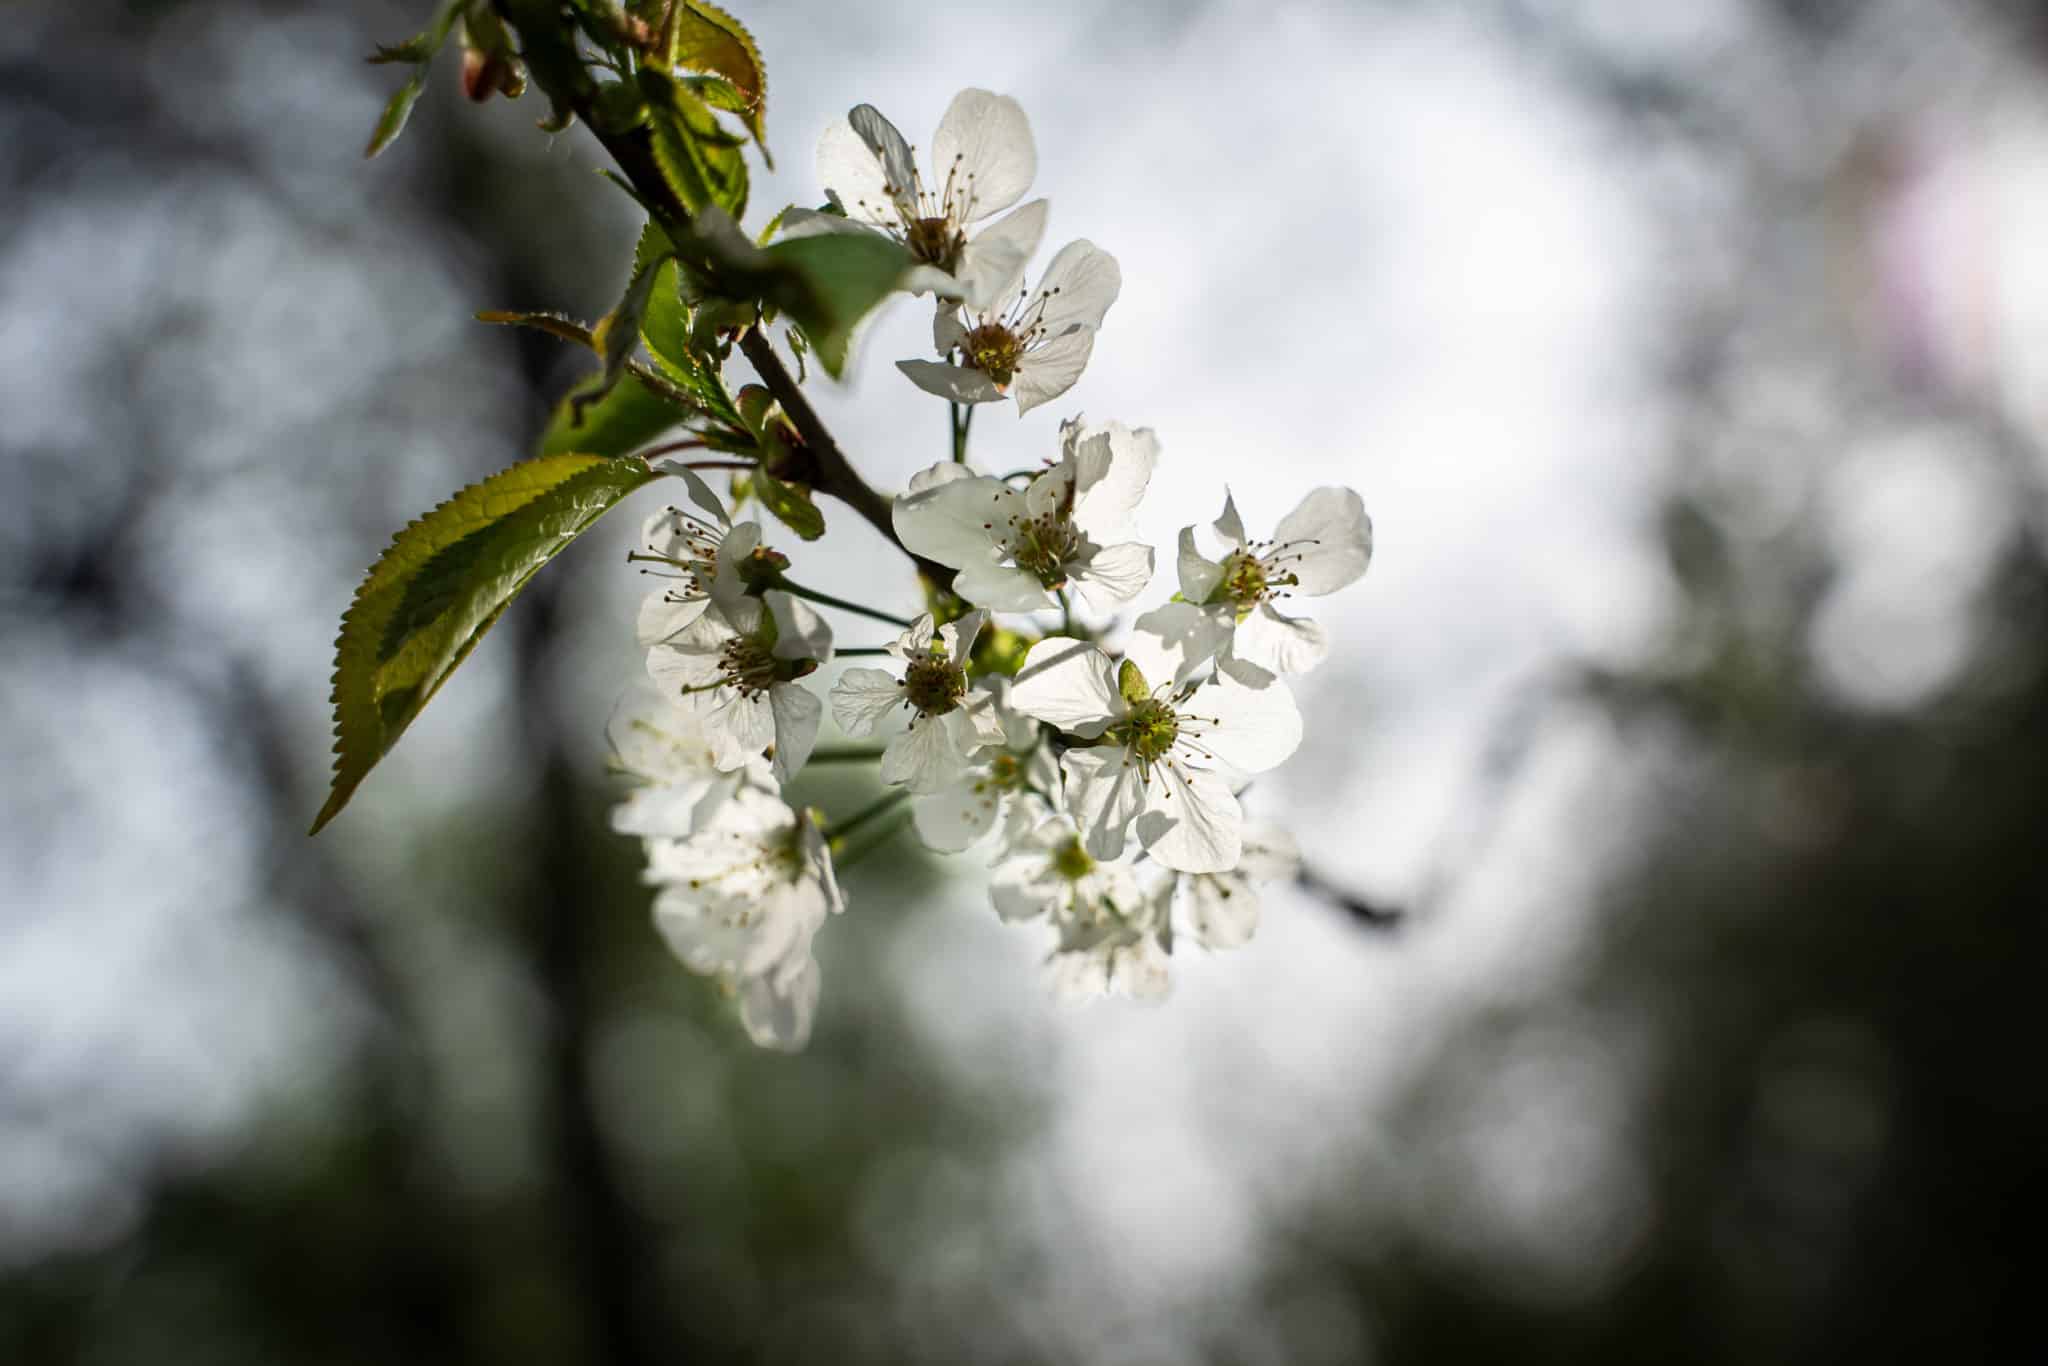 Featured image for “Merisier, le cerisier sauvage, Prunus avium”